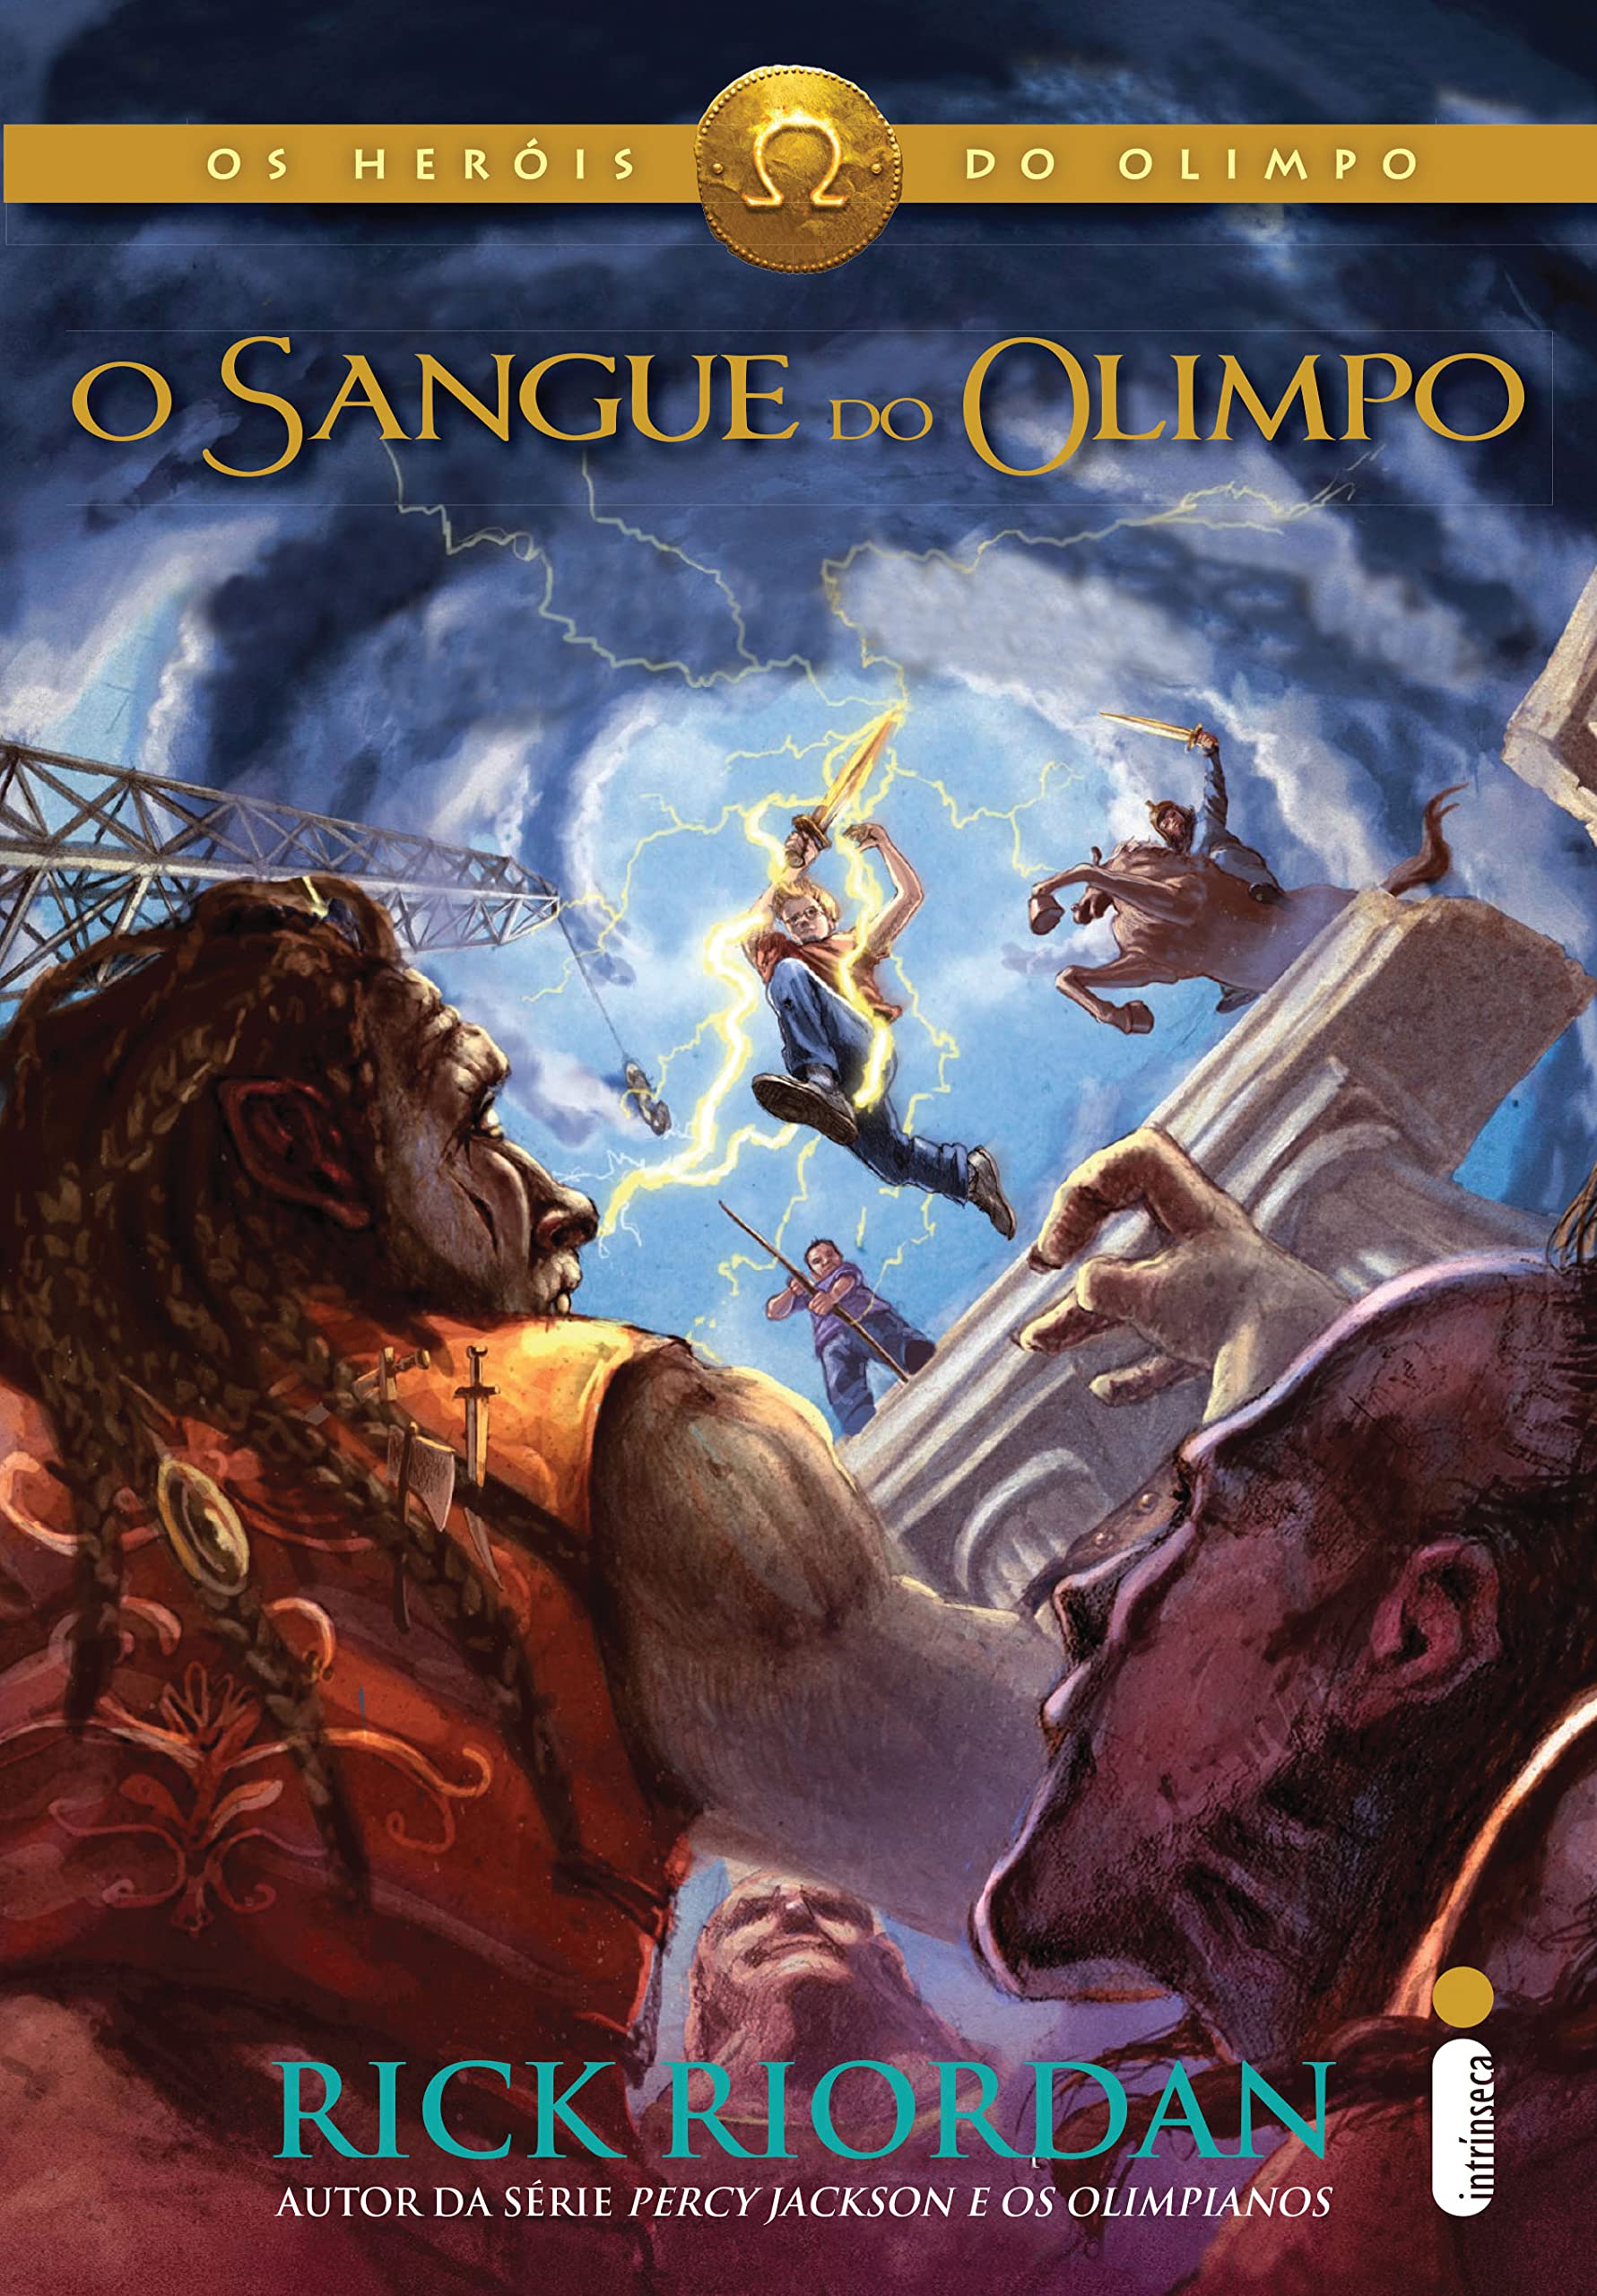 Resenha do Livro: O Sangue do Olimpo (Os Heróis do Olimpo #5) 